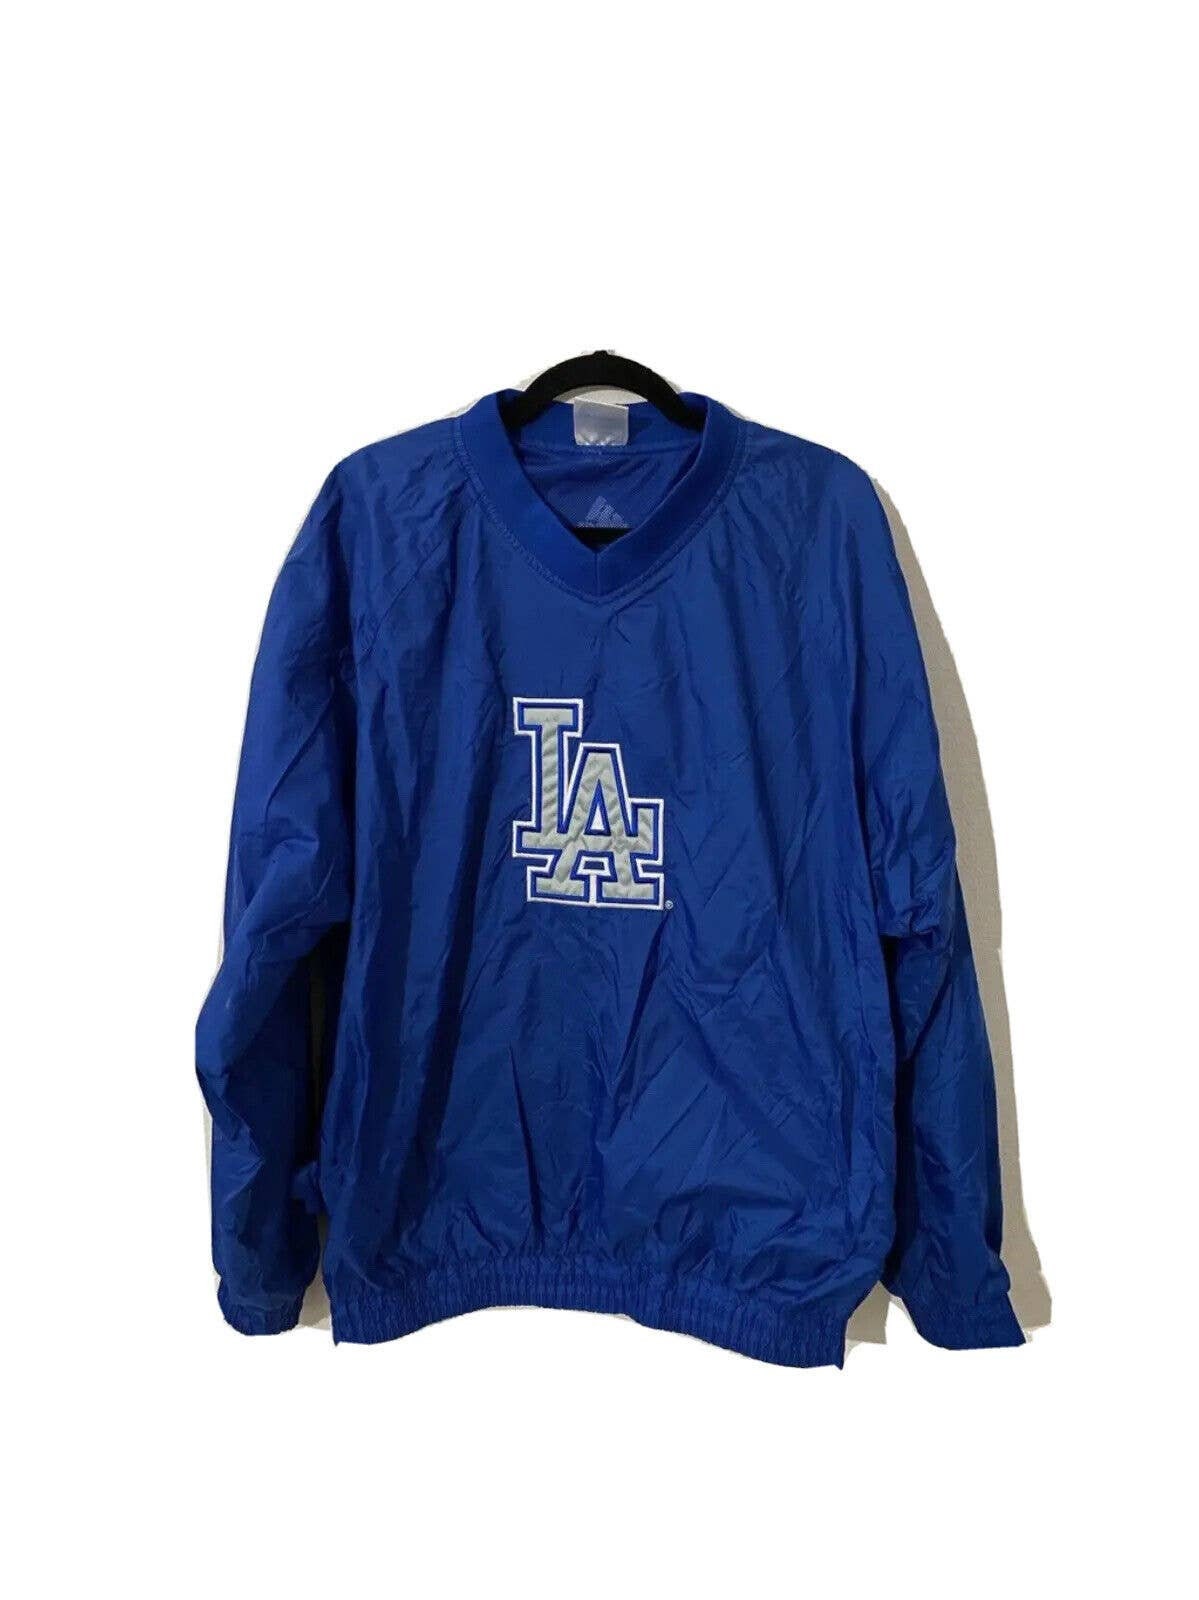 Los Angeles Dodgers Adidas V Neck Windbreaker Pullover Jacket Baseball XL